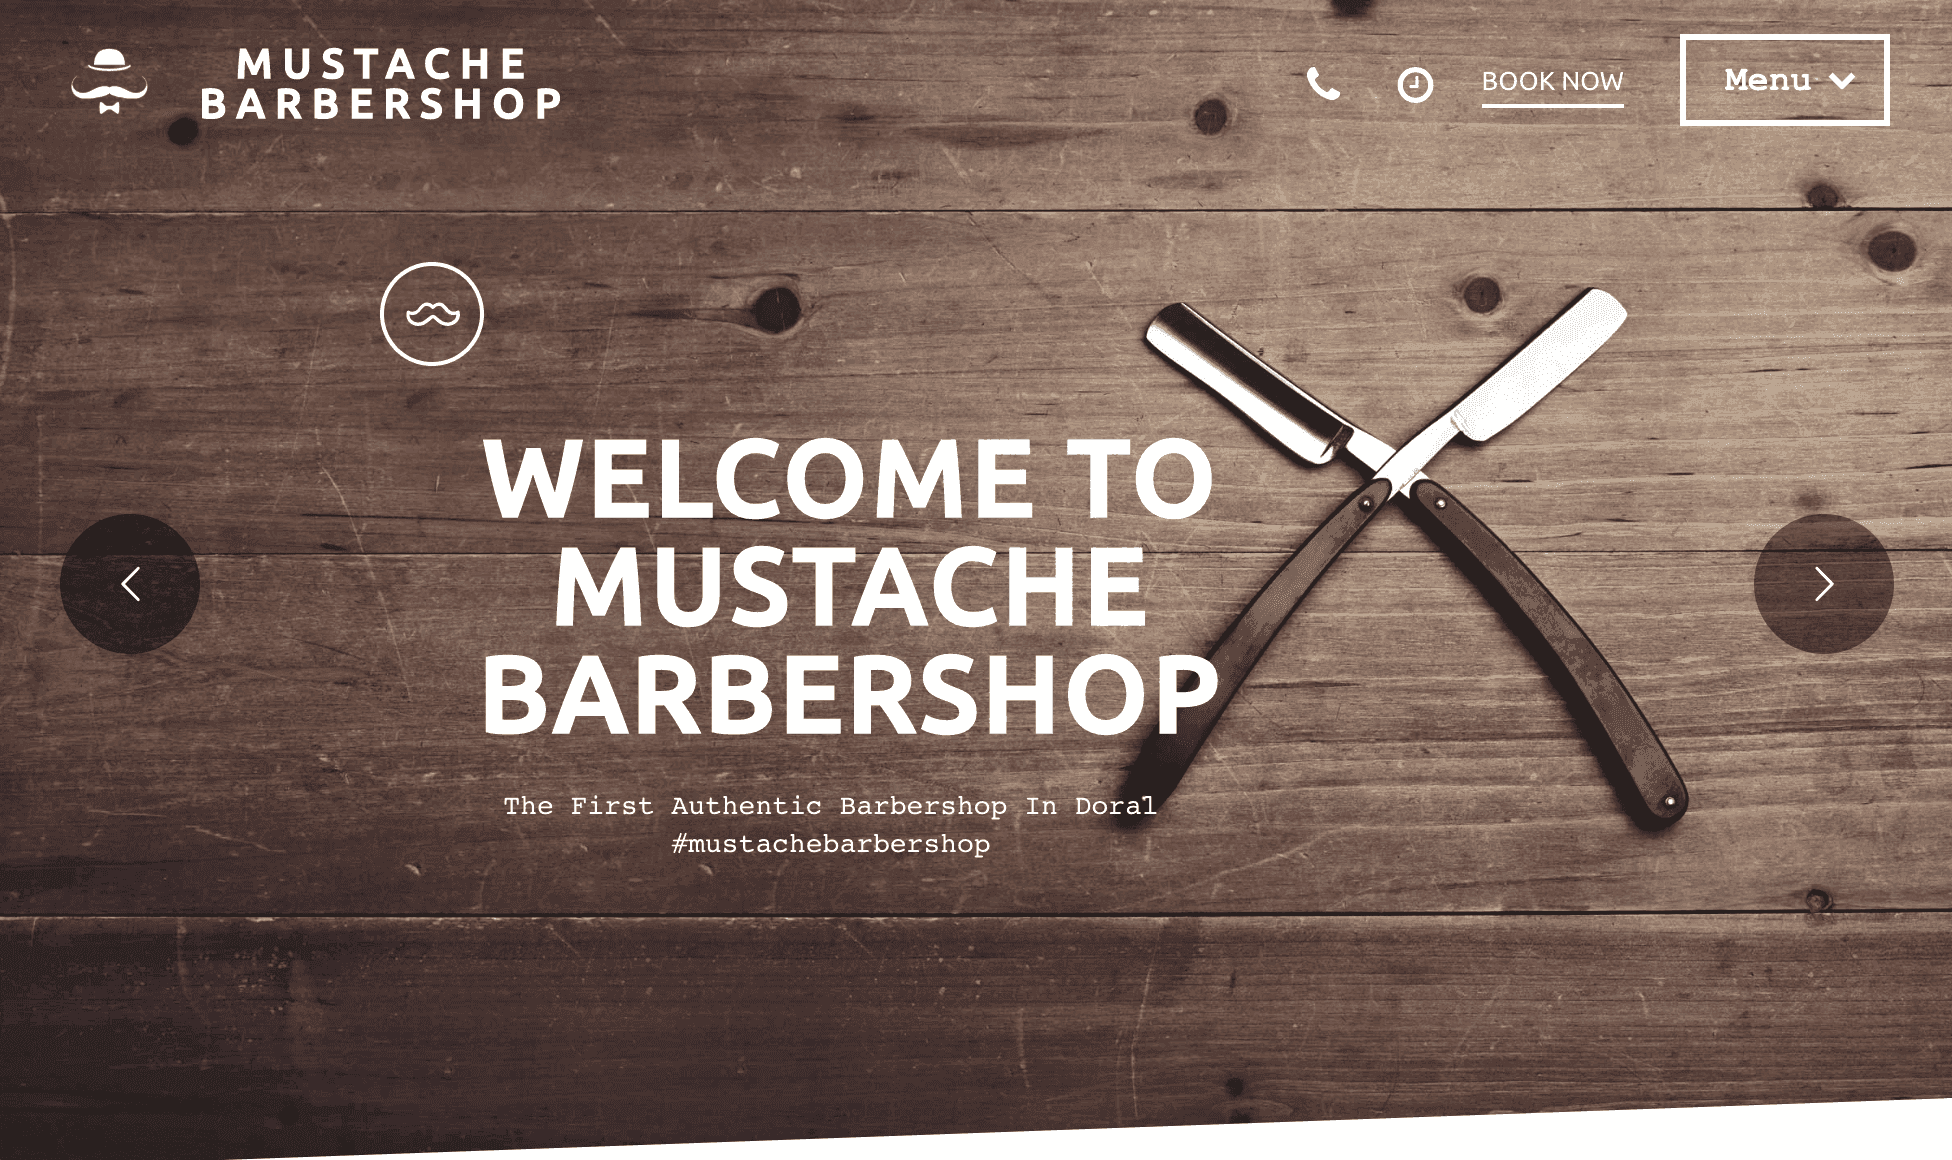 Mustache Barbershop